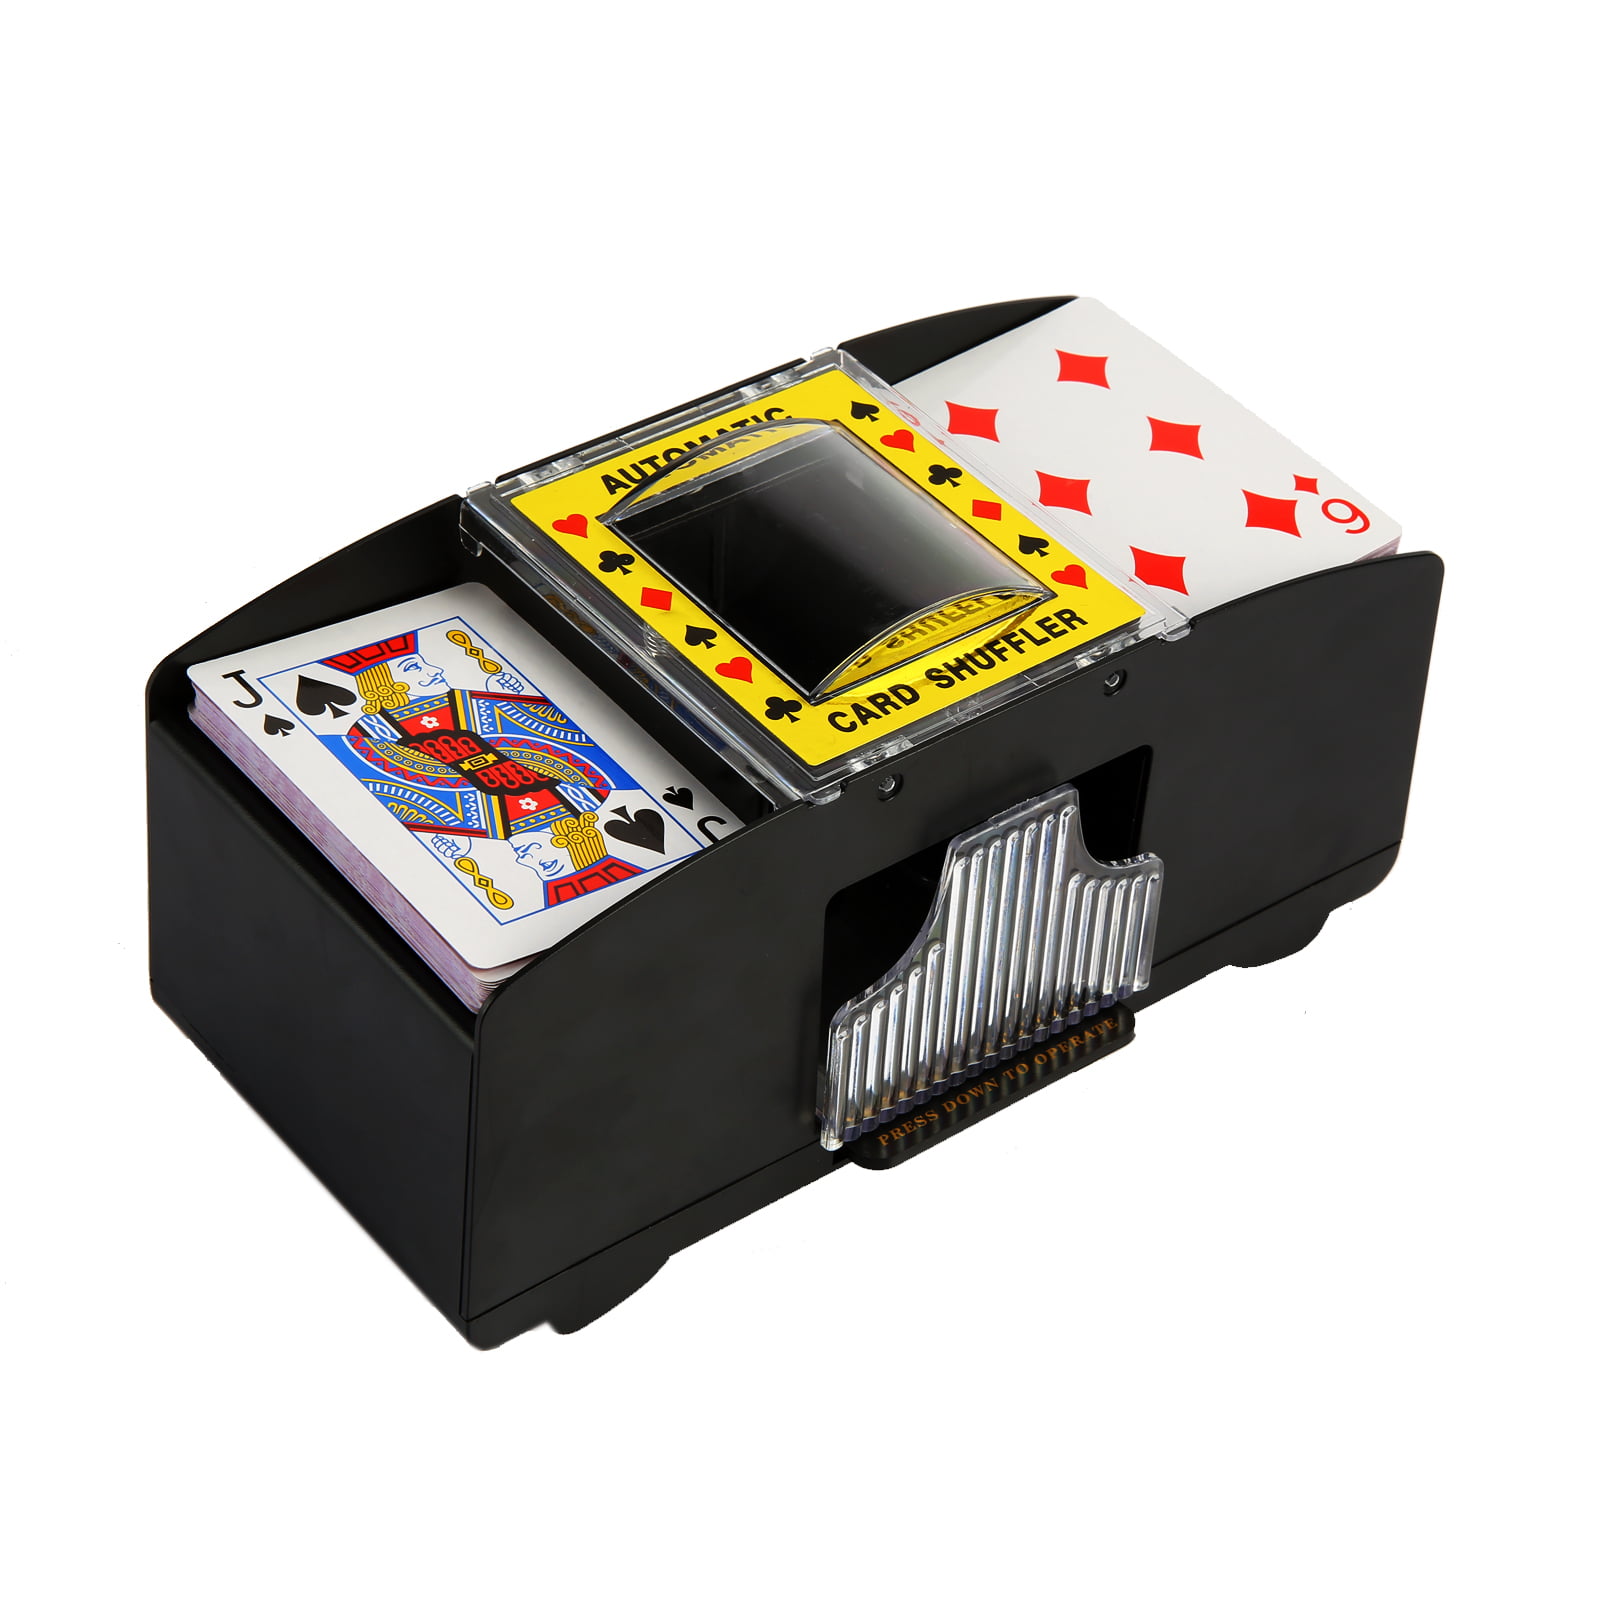 1Pc Bridge Game Electric Playing Card Shuffler Automatic Poker Shuffling Machine 